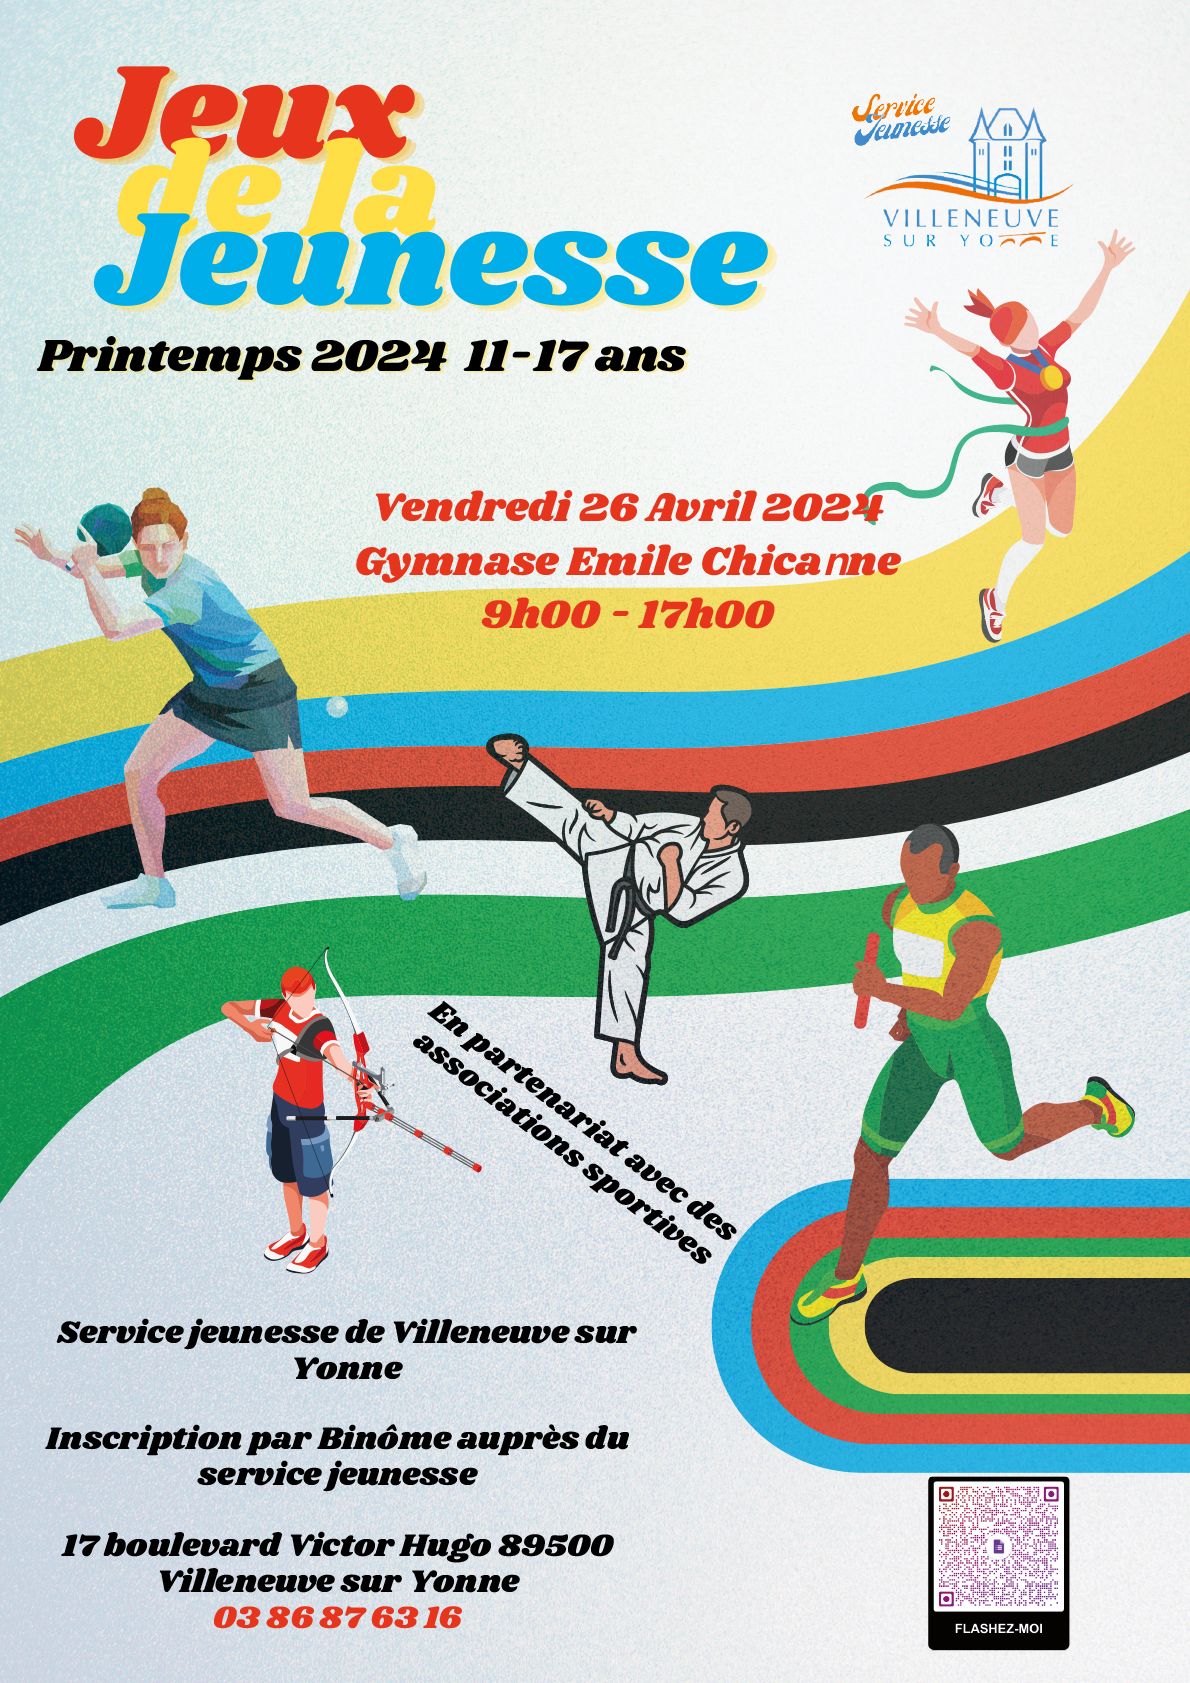 Le service jeunesse organise, dans le cadre des prochains Jeux Olympiques et Paralympiques, une j...